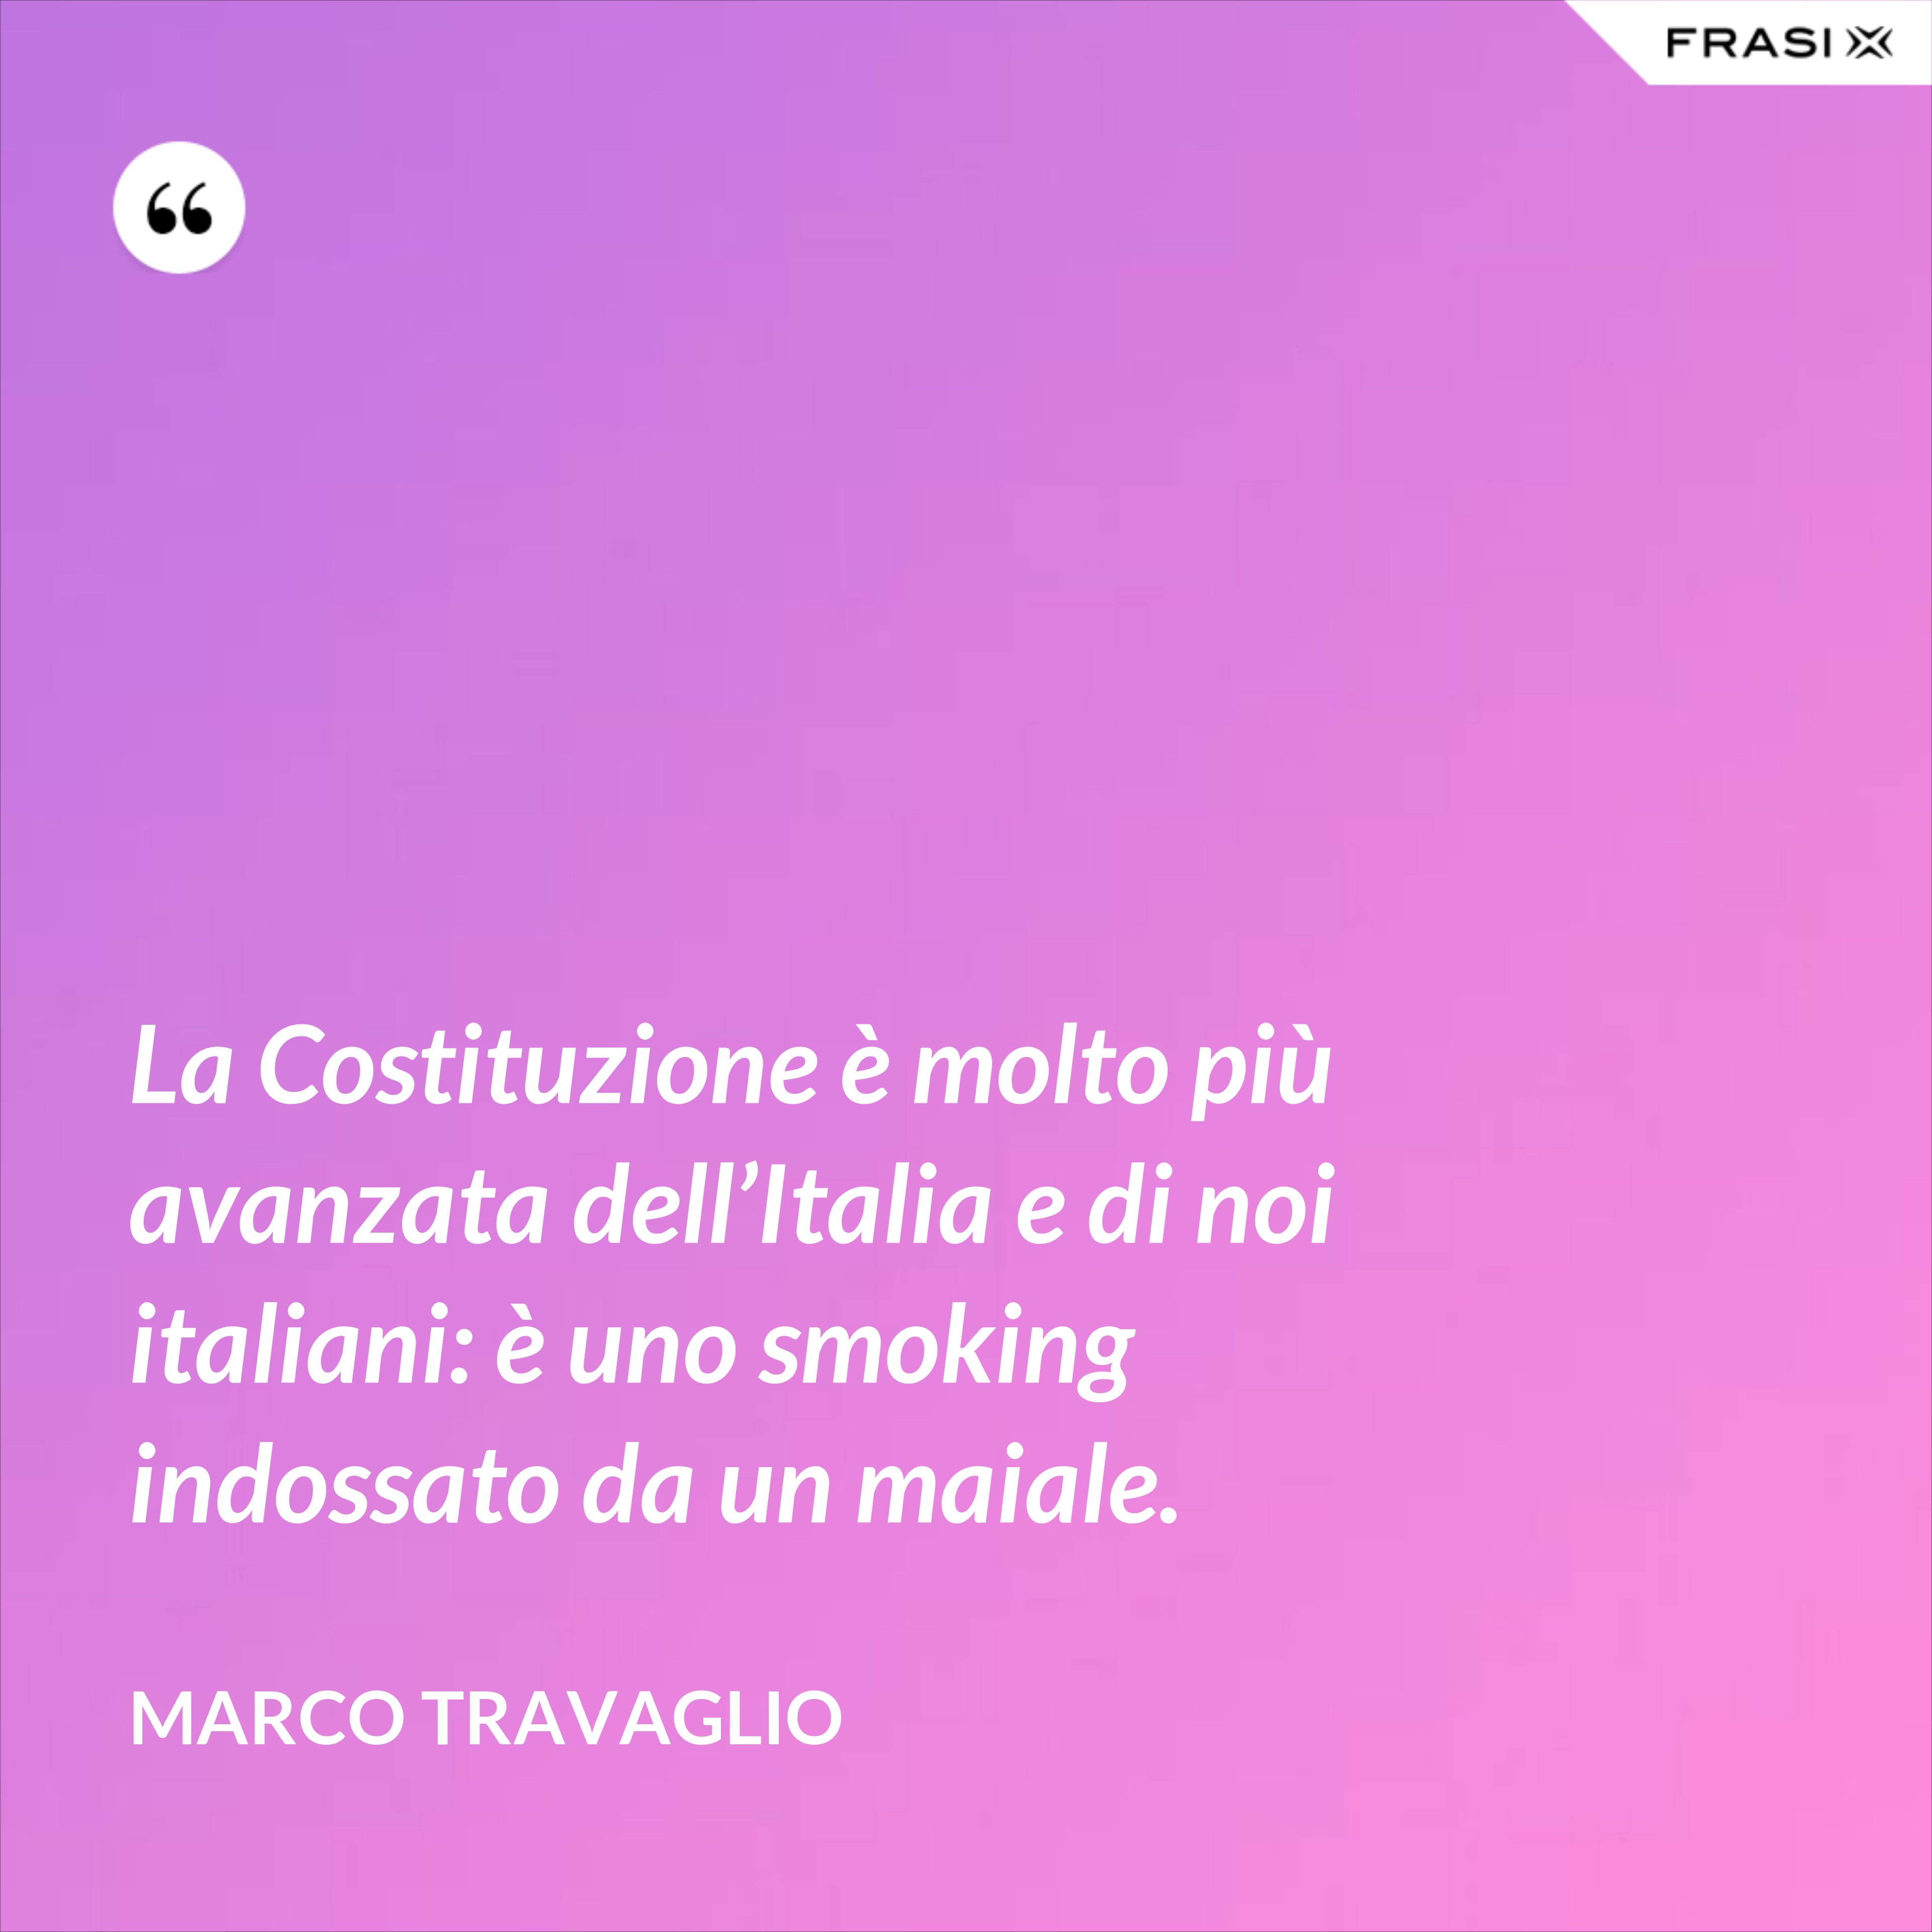 La Costituzione è molto più avanzata dell’Italia e di noi italiani: è uno smoking indossato da un maiale. - Marco Travaglio